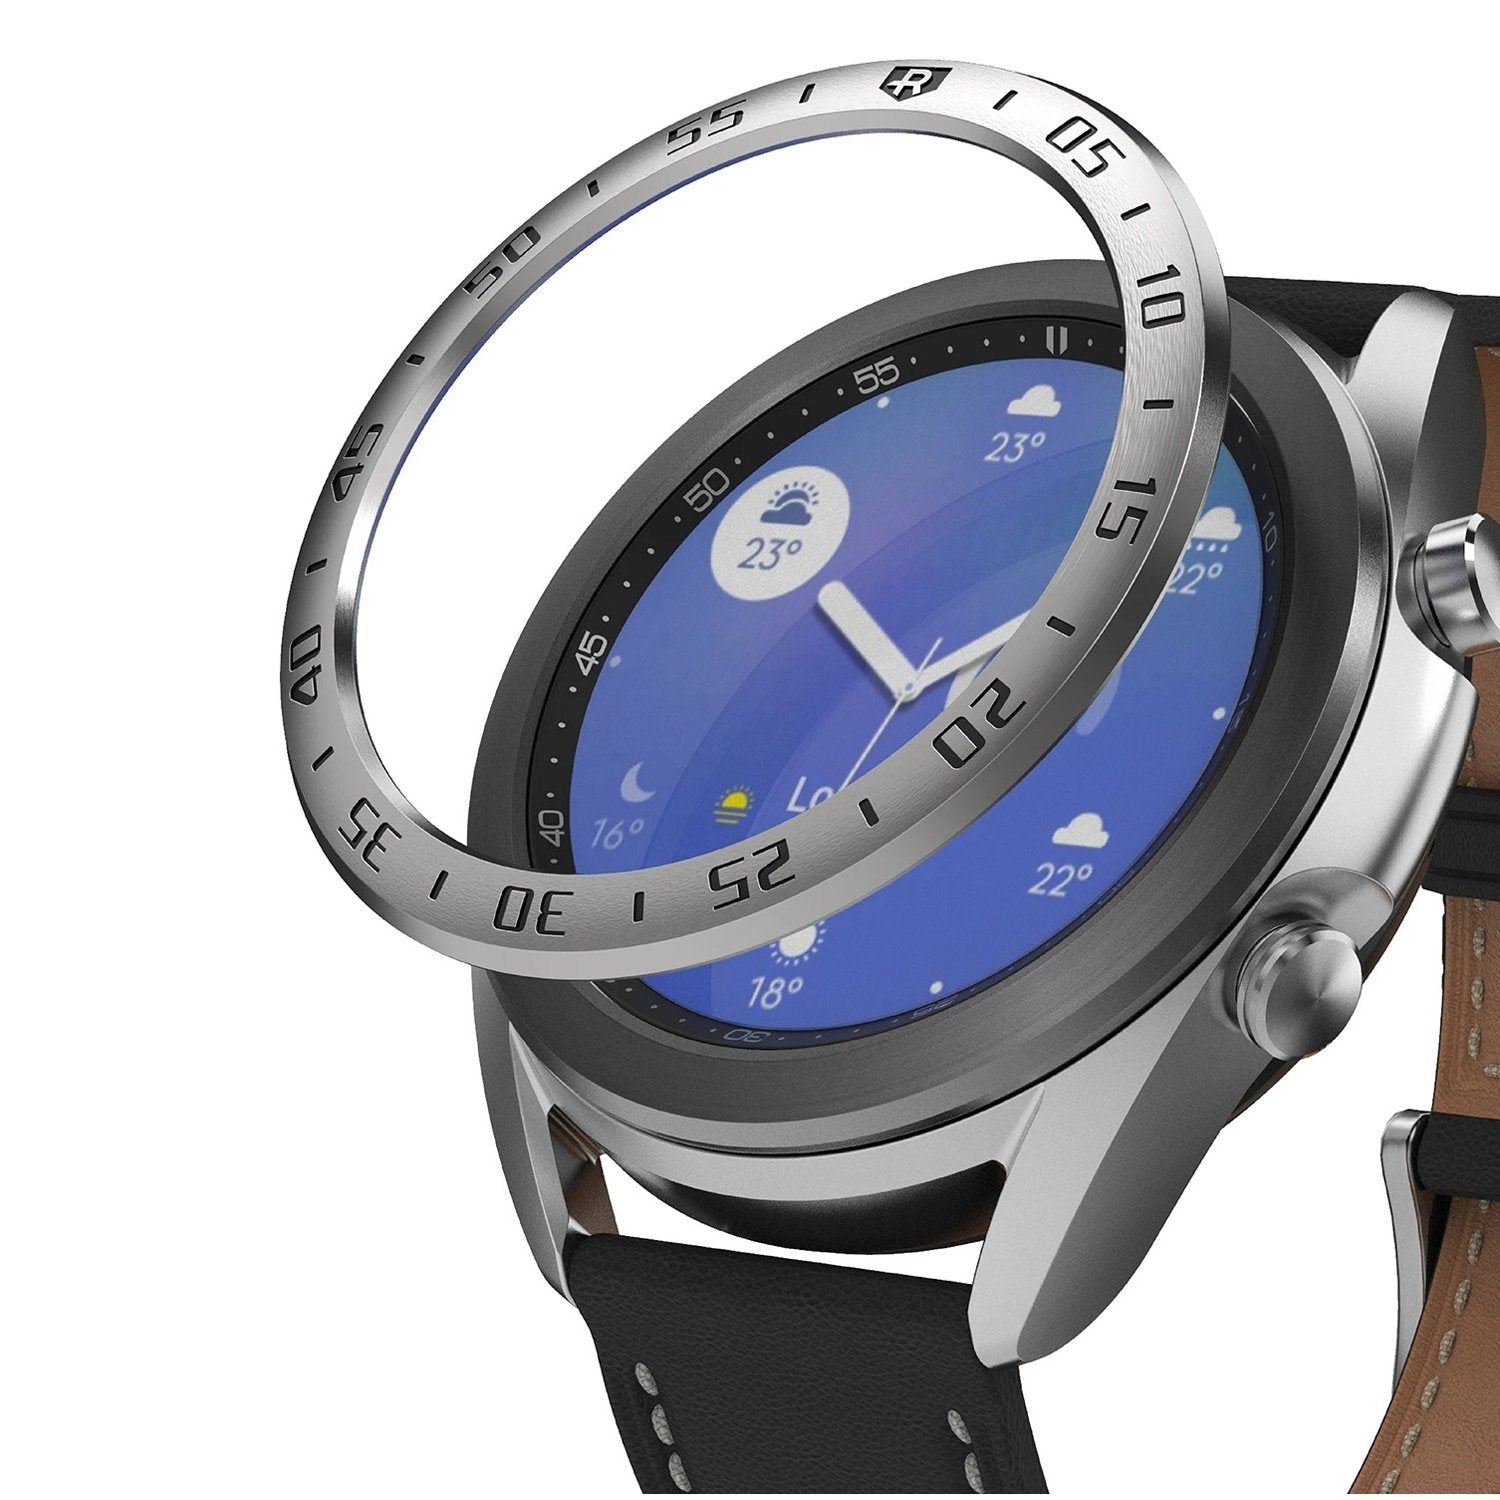 Ringke BEZEL STYLING for Galaxy Watch 41mm, StainlessSteel(GW3-41-01) Default Ringke 